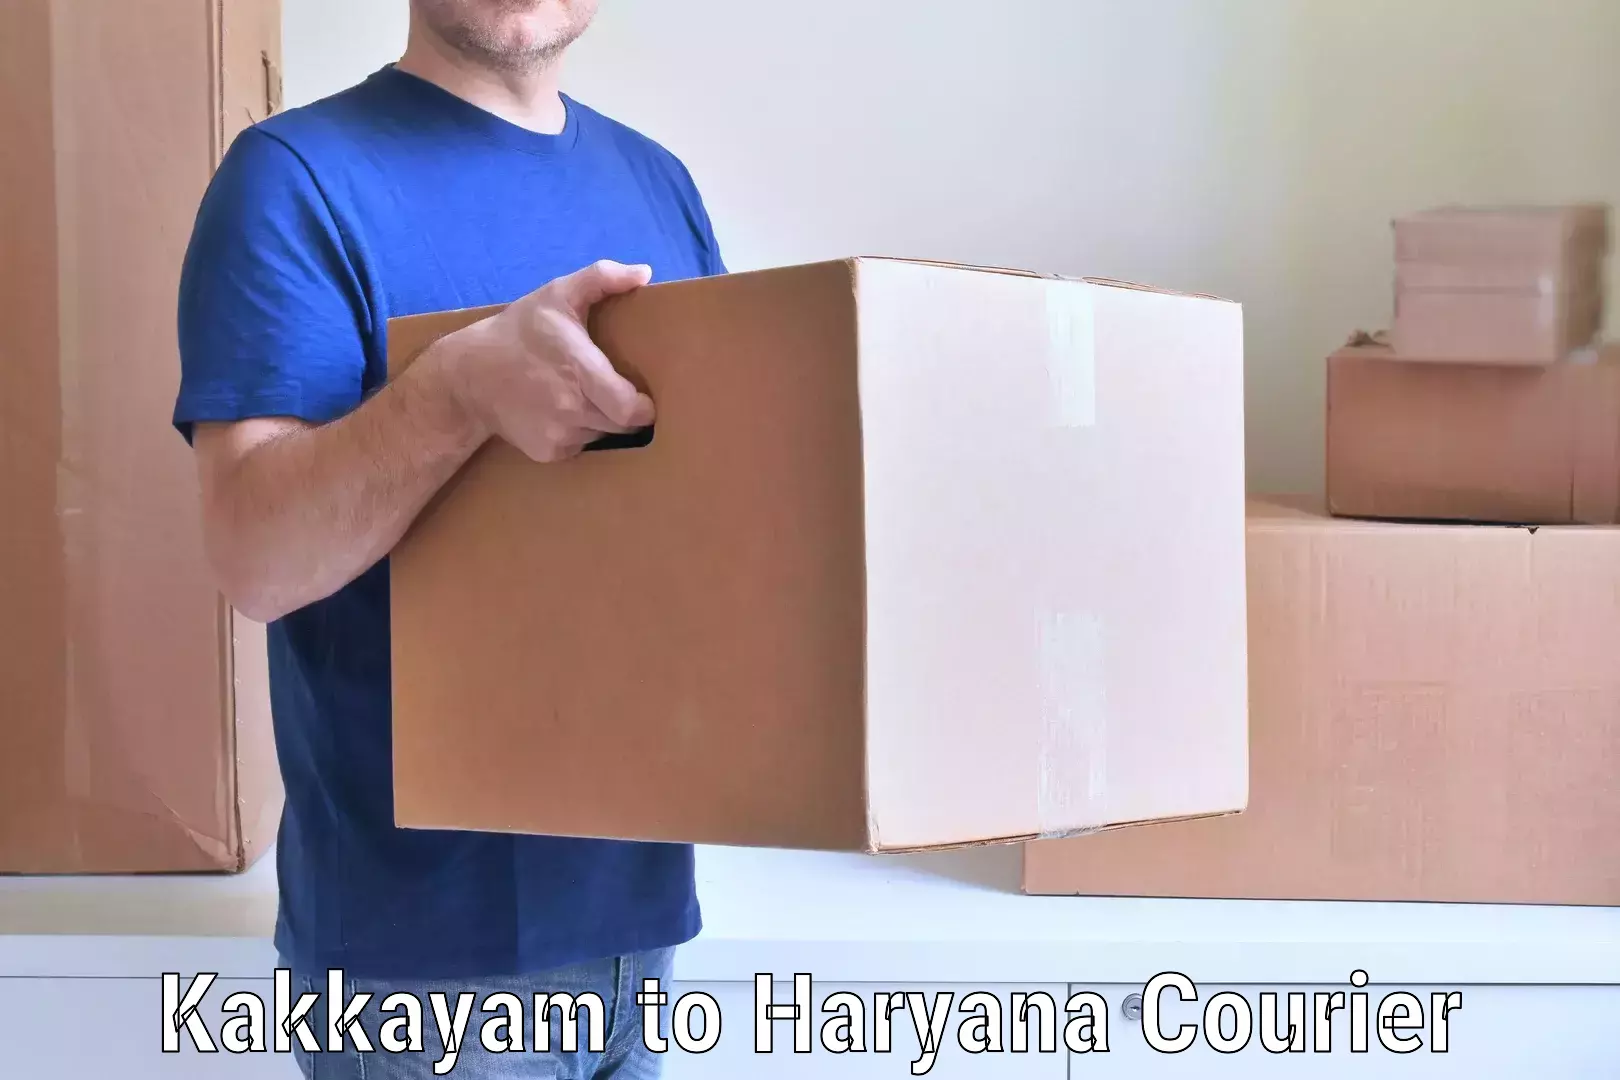 Cost-effective moving options Kakkayam to Barwala